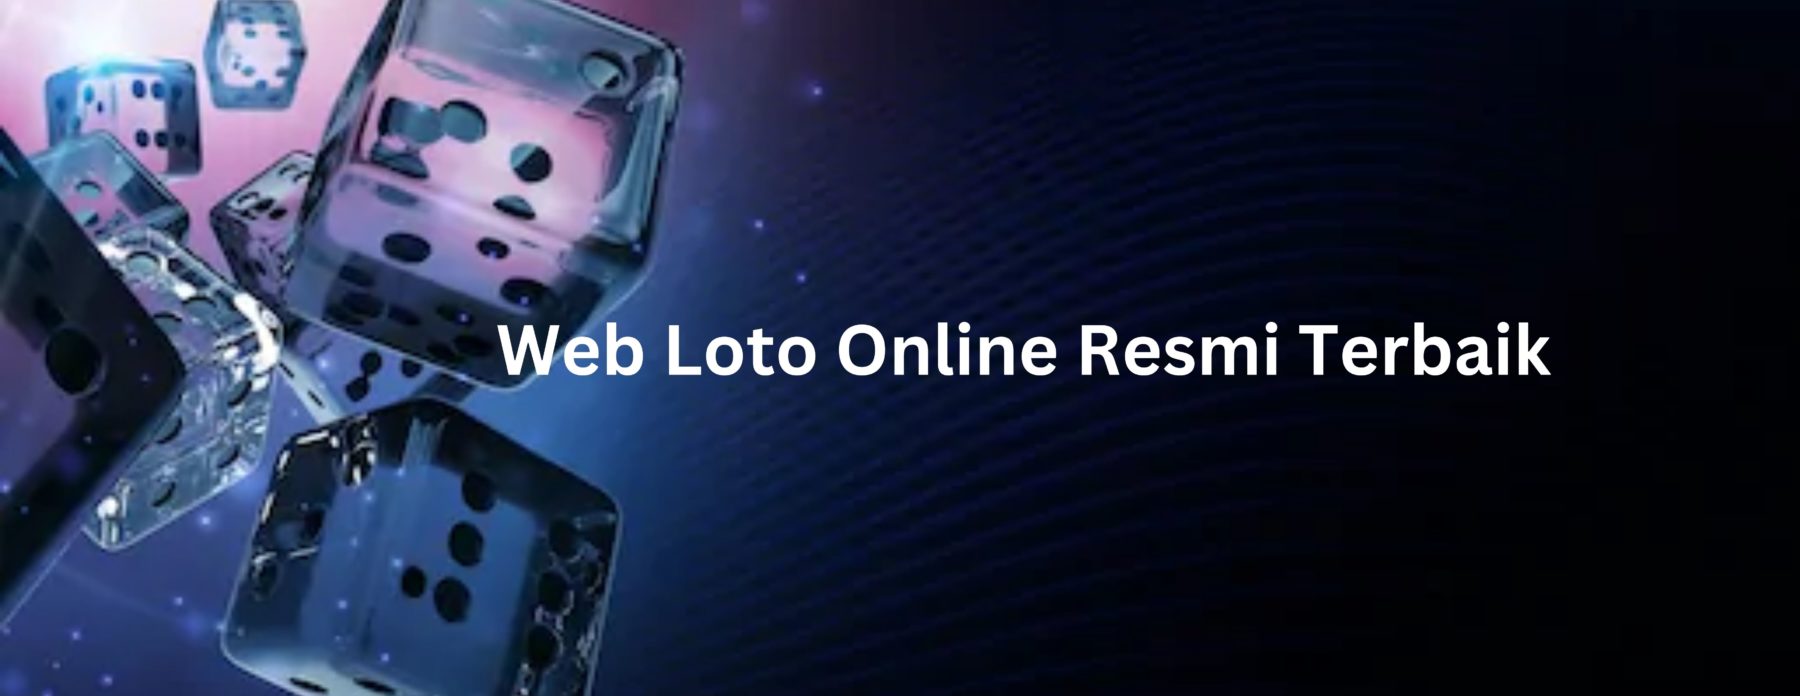 Web Loto Online Resmi Terbaik